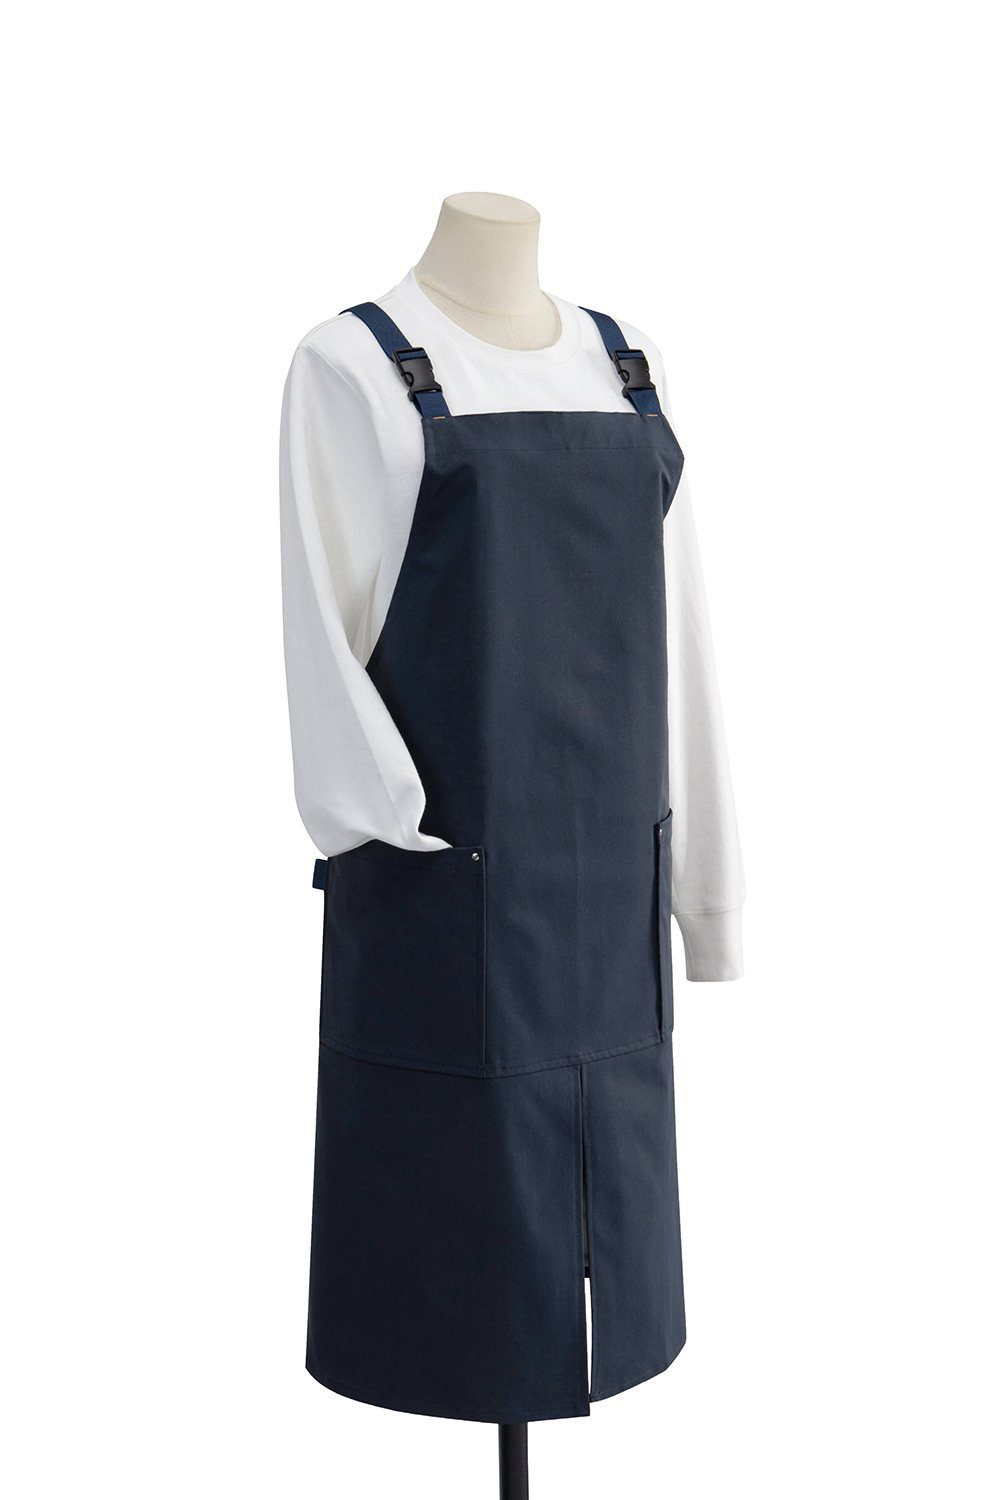 BlauCoastal Kochschürze Leinenschürze mit Taschen, Damen Herren Grill Malerei Kochen verstellbare Schürze, Unisex